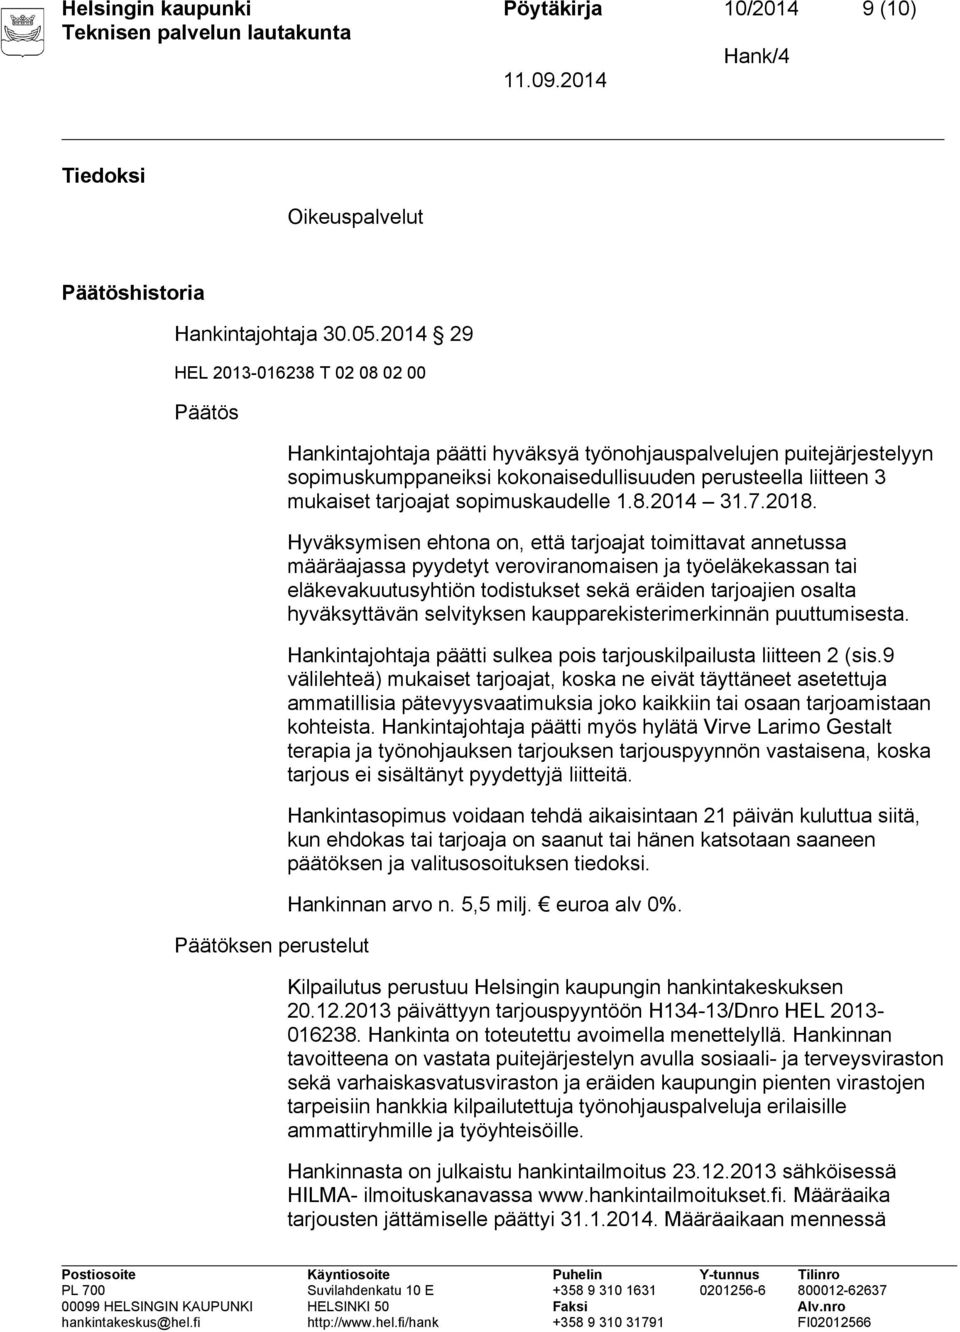 3 mukaiset tarjoajat sopimuskaudelle 1.8.2014 31.7.2018.